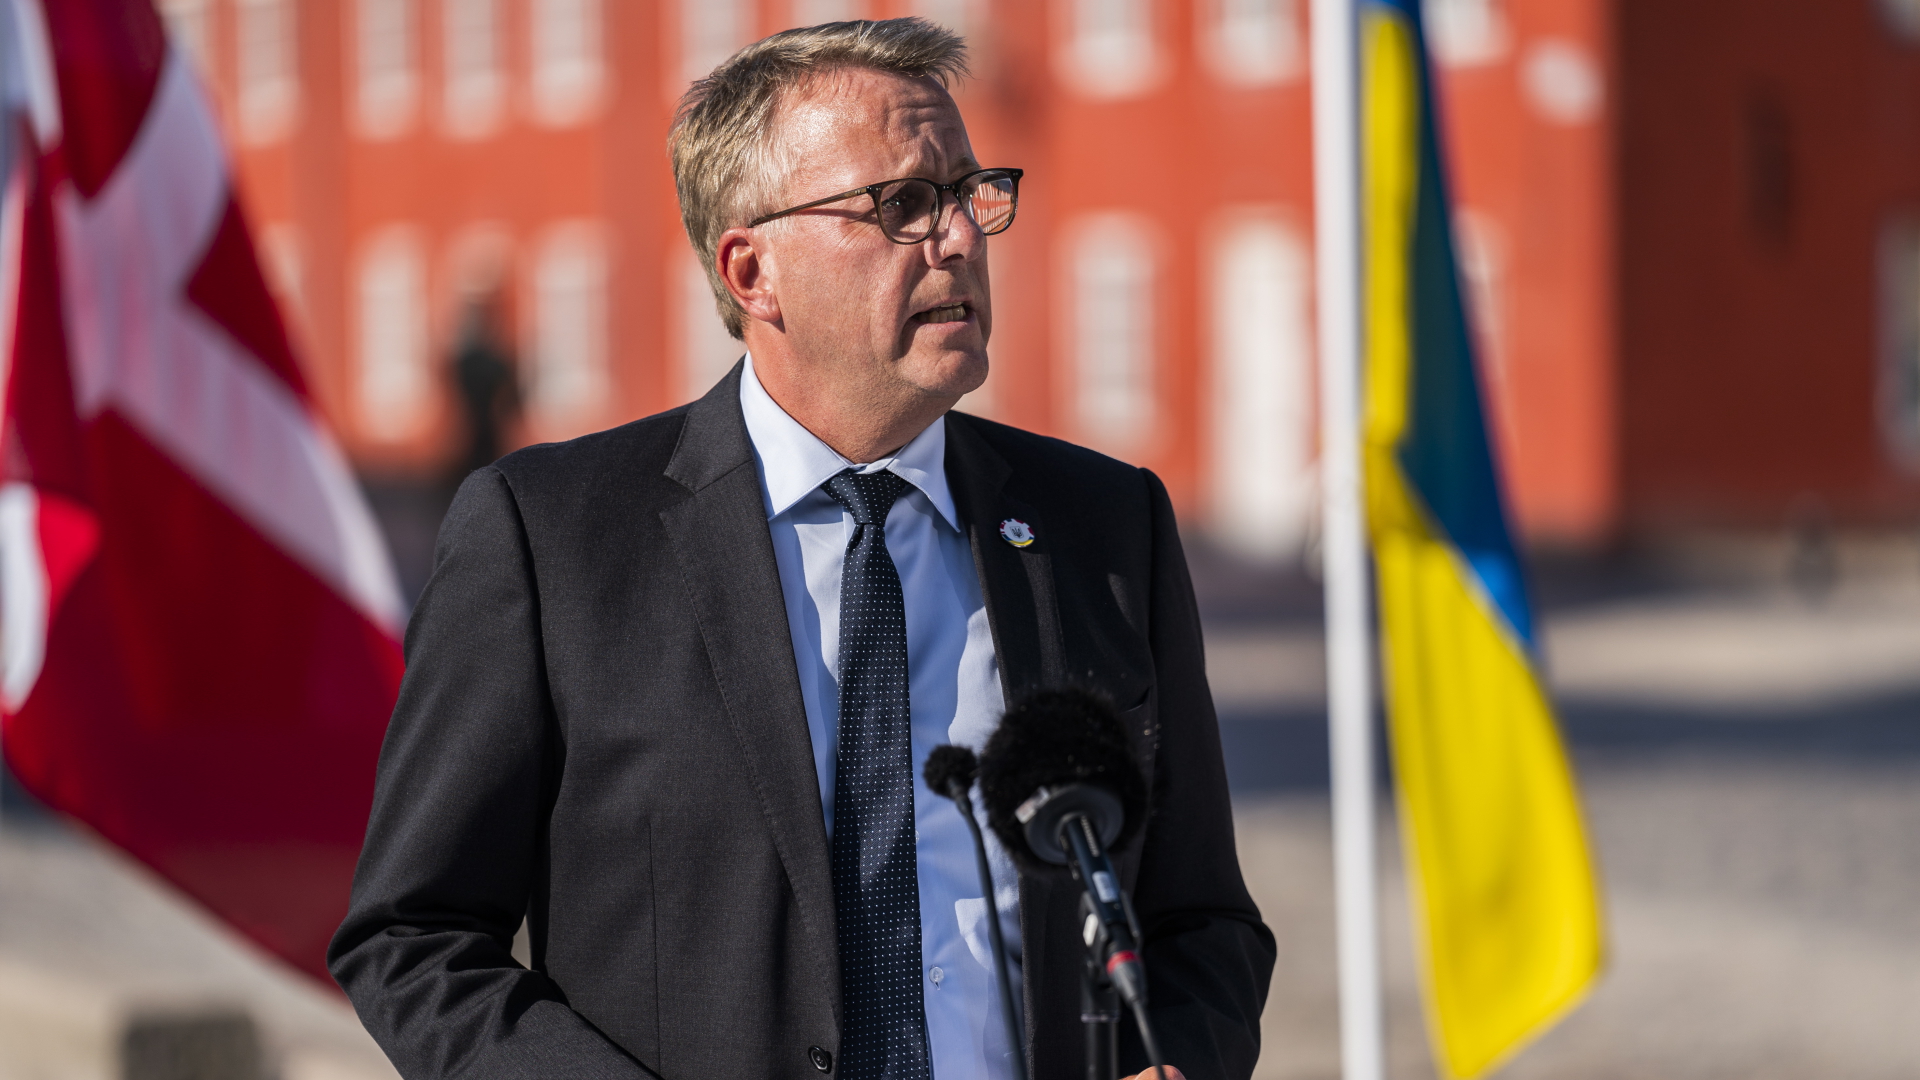 Morten Bødskov, der dänische Verteidigungsminister, bei einer Pressekonferenz. | EPA